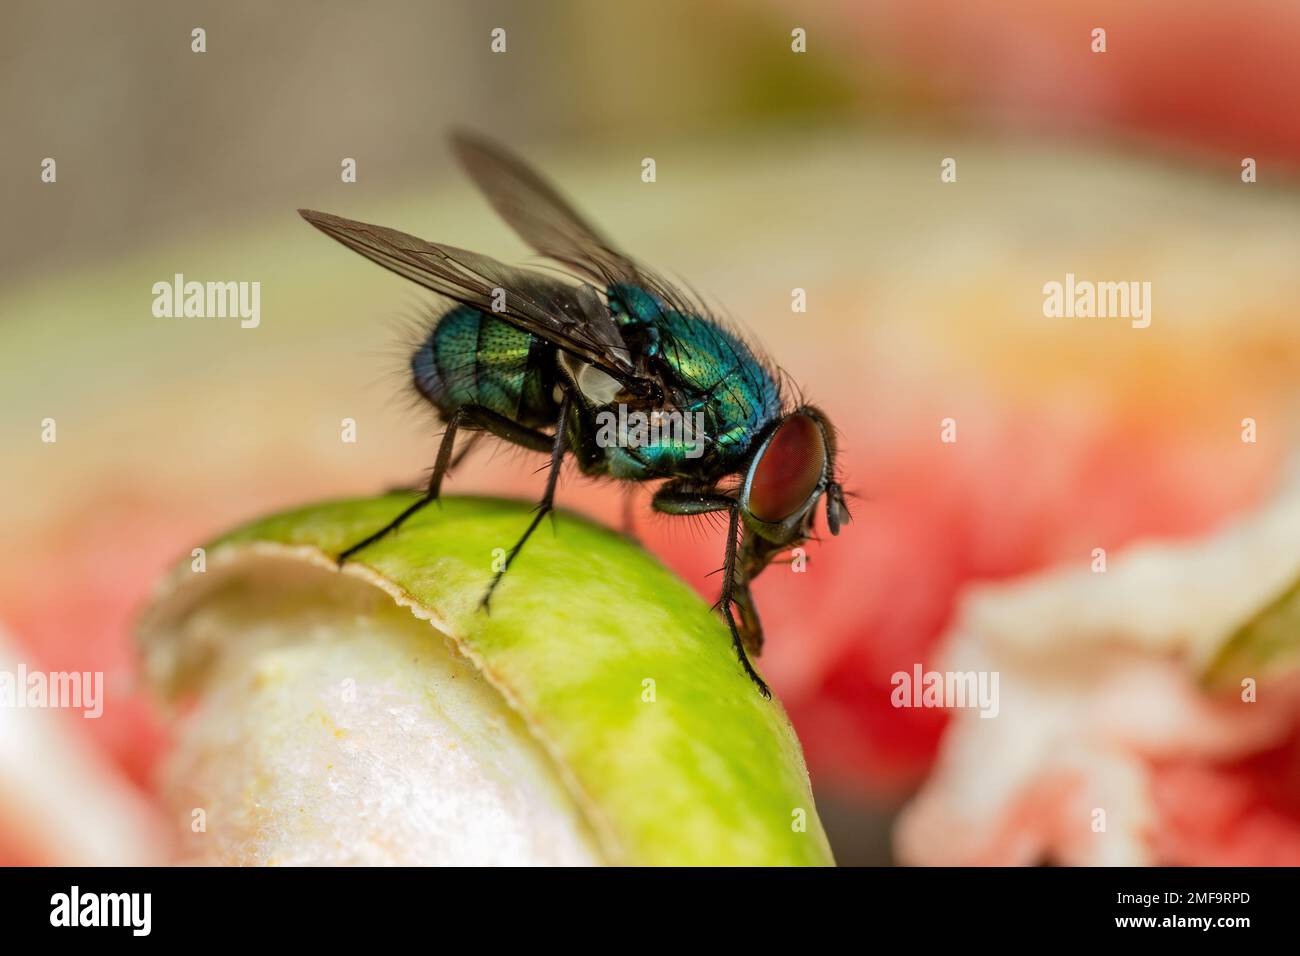 House Fly, Flesh Fly oder Meat Fly Sarcophagidae Parasit Insektenpest auf Obst. Gefahr von Krankheitsvektor, Erregerübertragung oder Ausbreitung von Infektionserregern Stockfoto